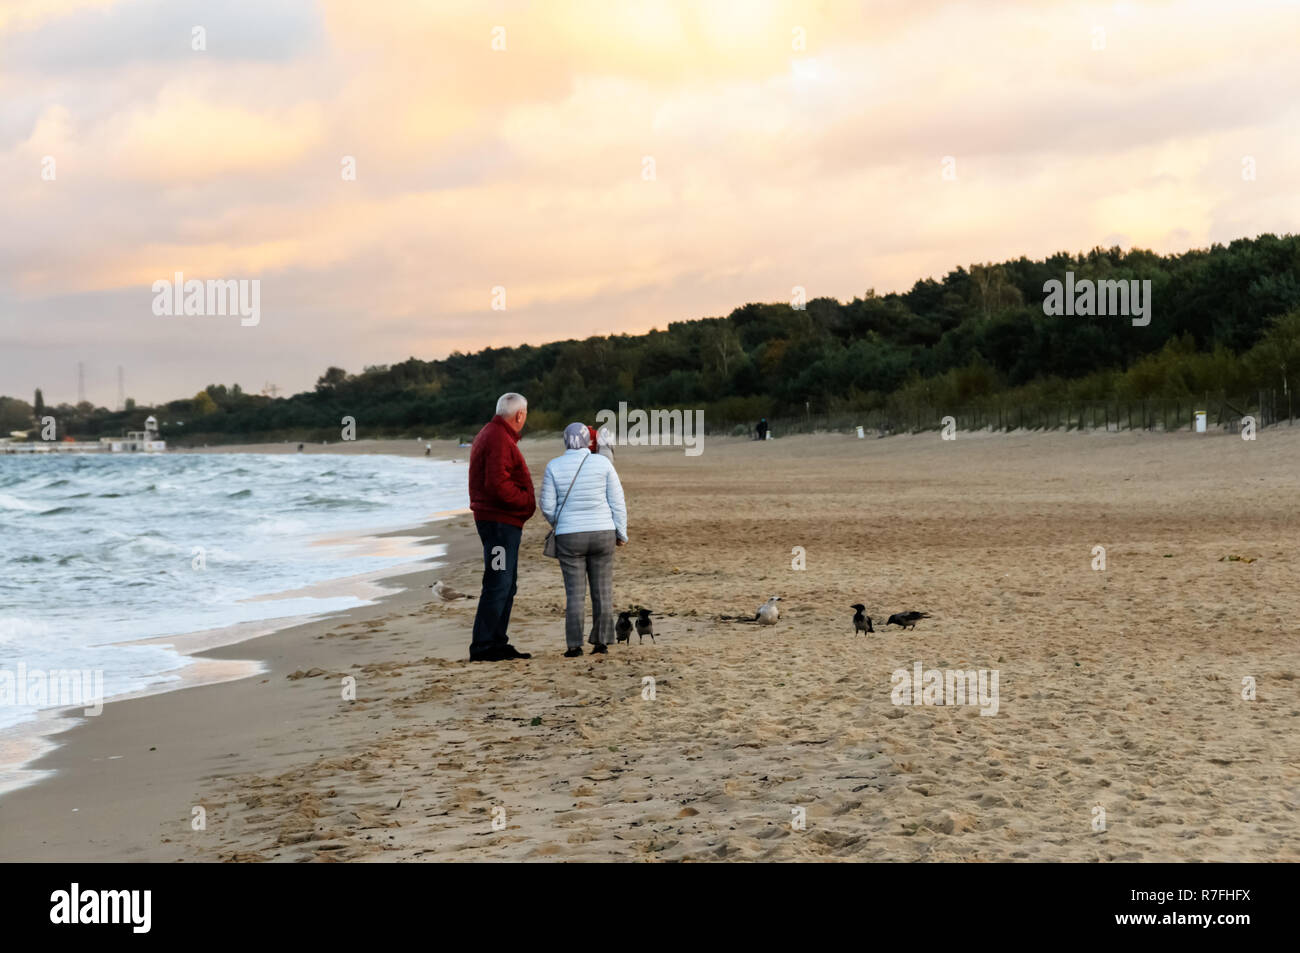 Alter für Zwei. Spaziergang am Meer, Frau, Mann und Hund Stockfoto